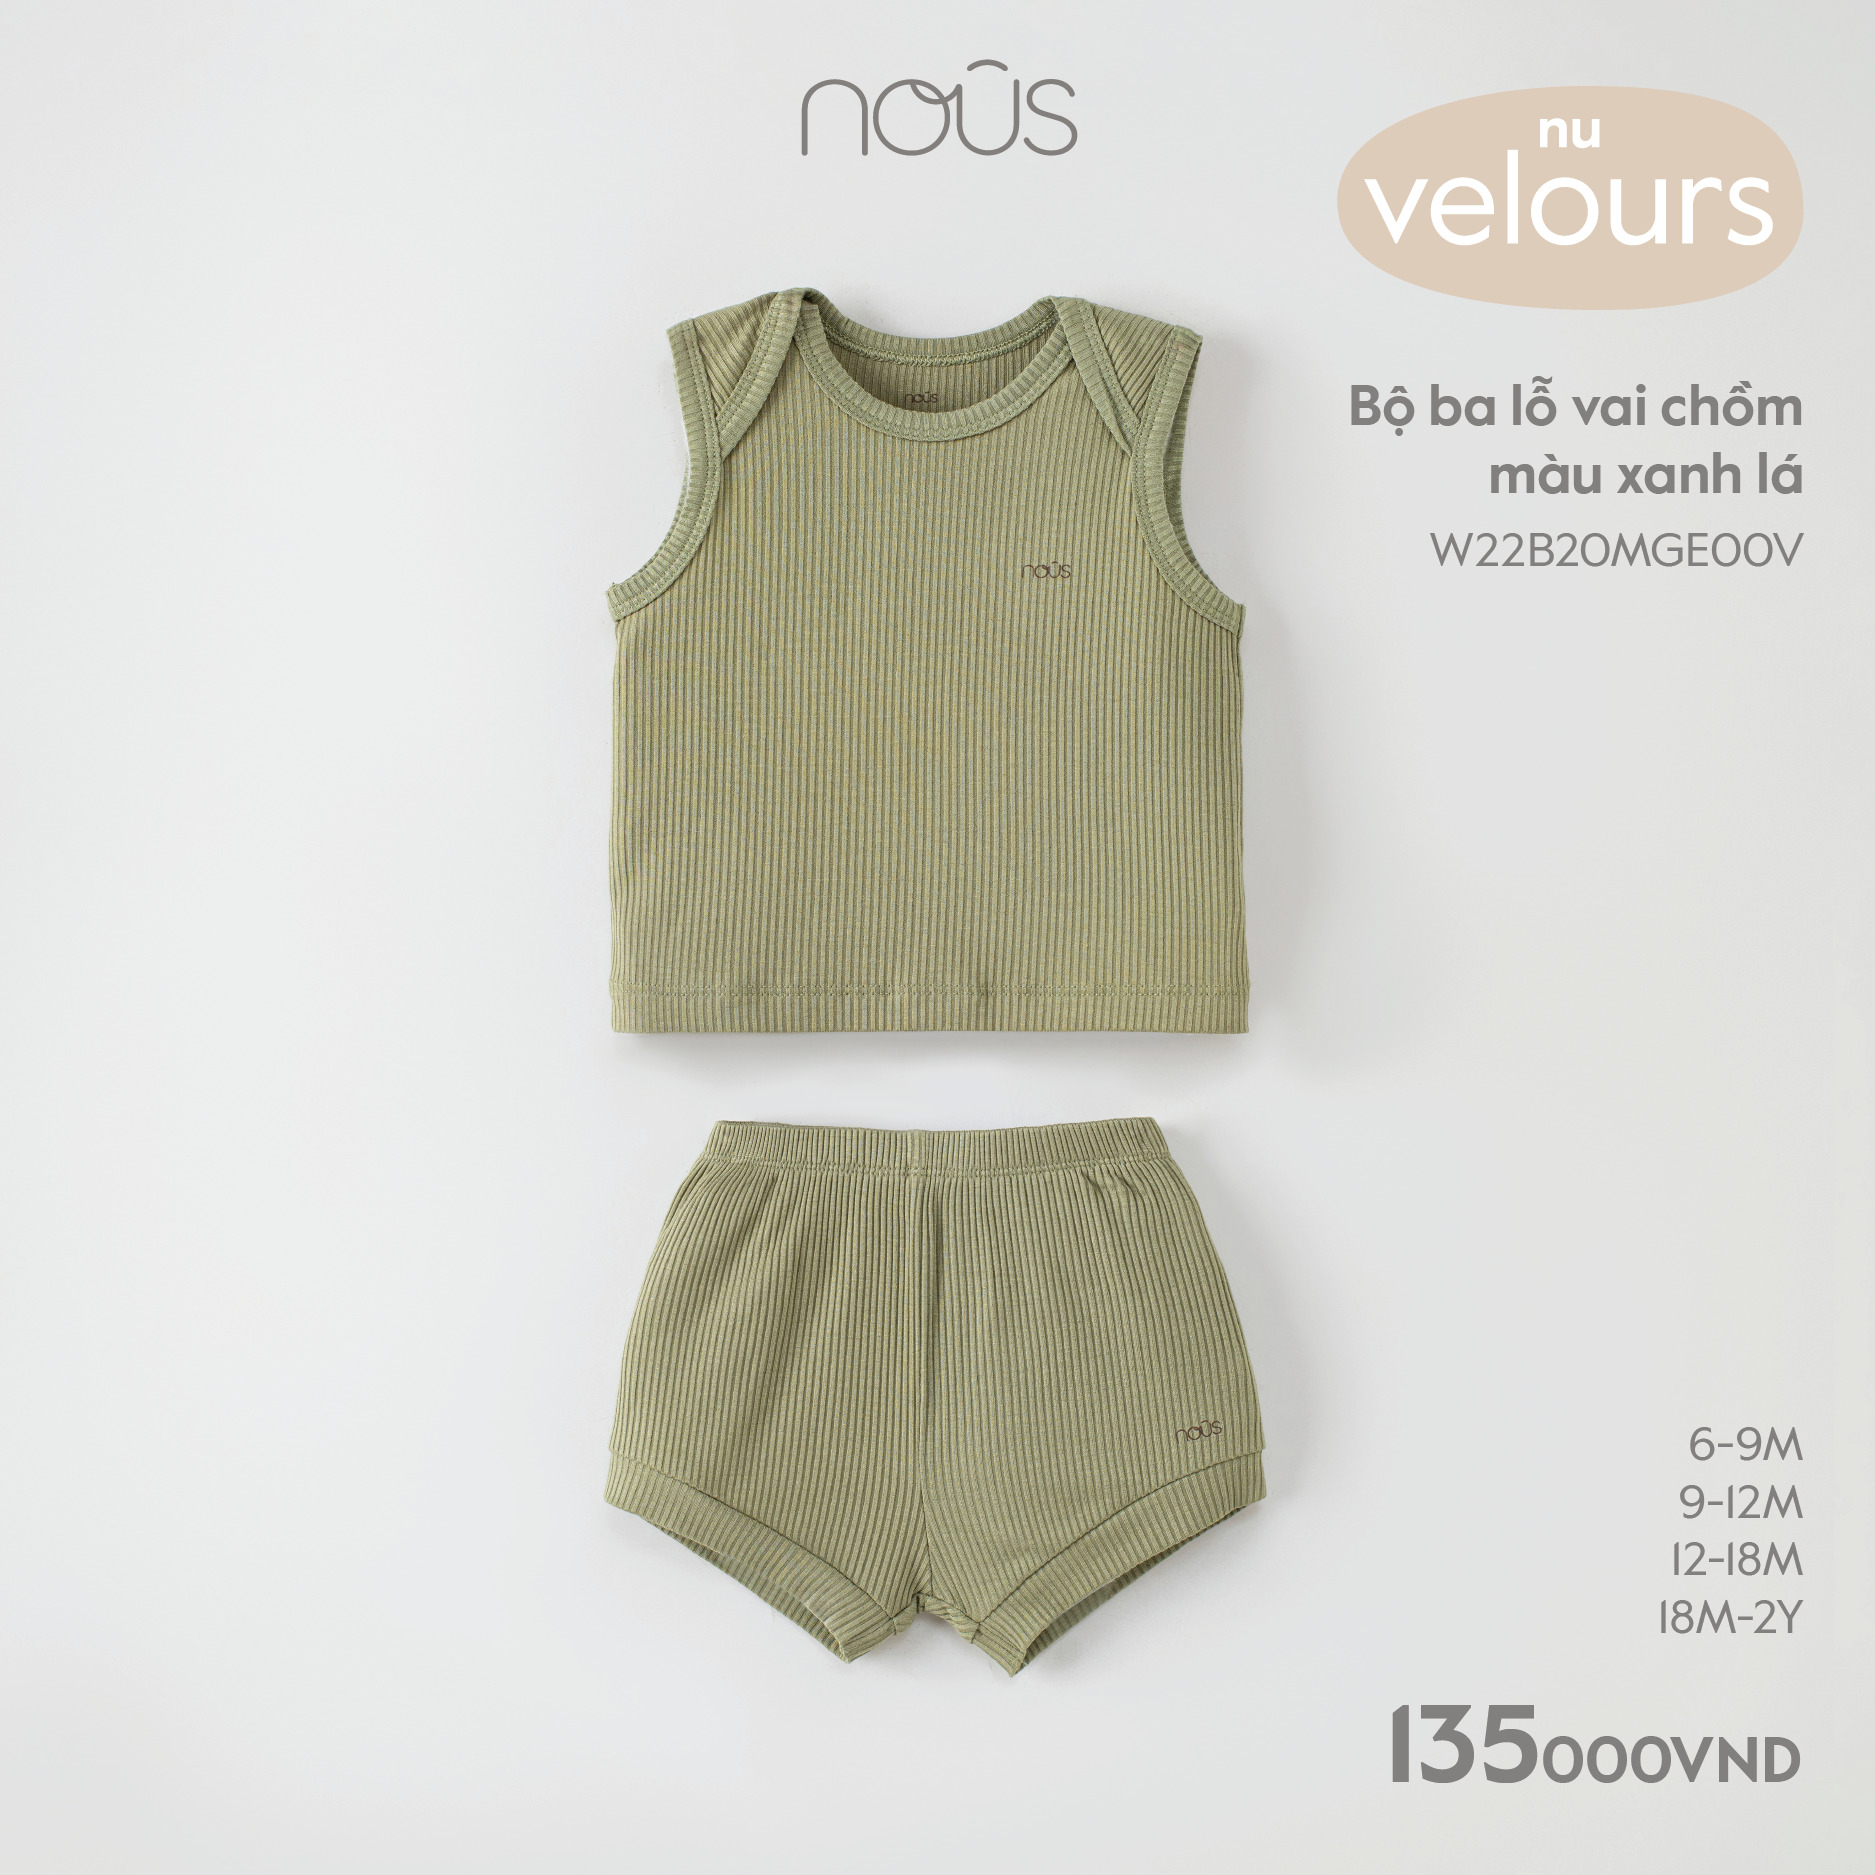 Bộ quần áo ba lỗ Nous cho bé nhiều màu sắc chất liệu kháng khuẩn cho bé từ 6-9 tháng đến 18-24 tháng